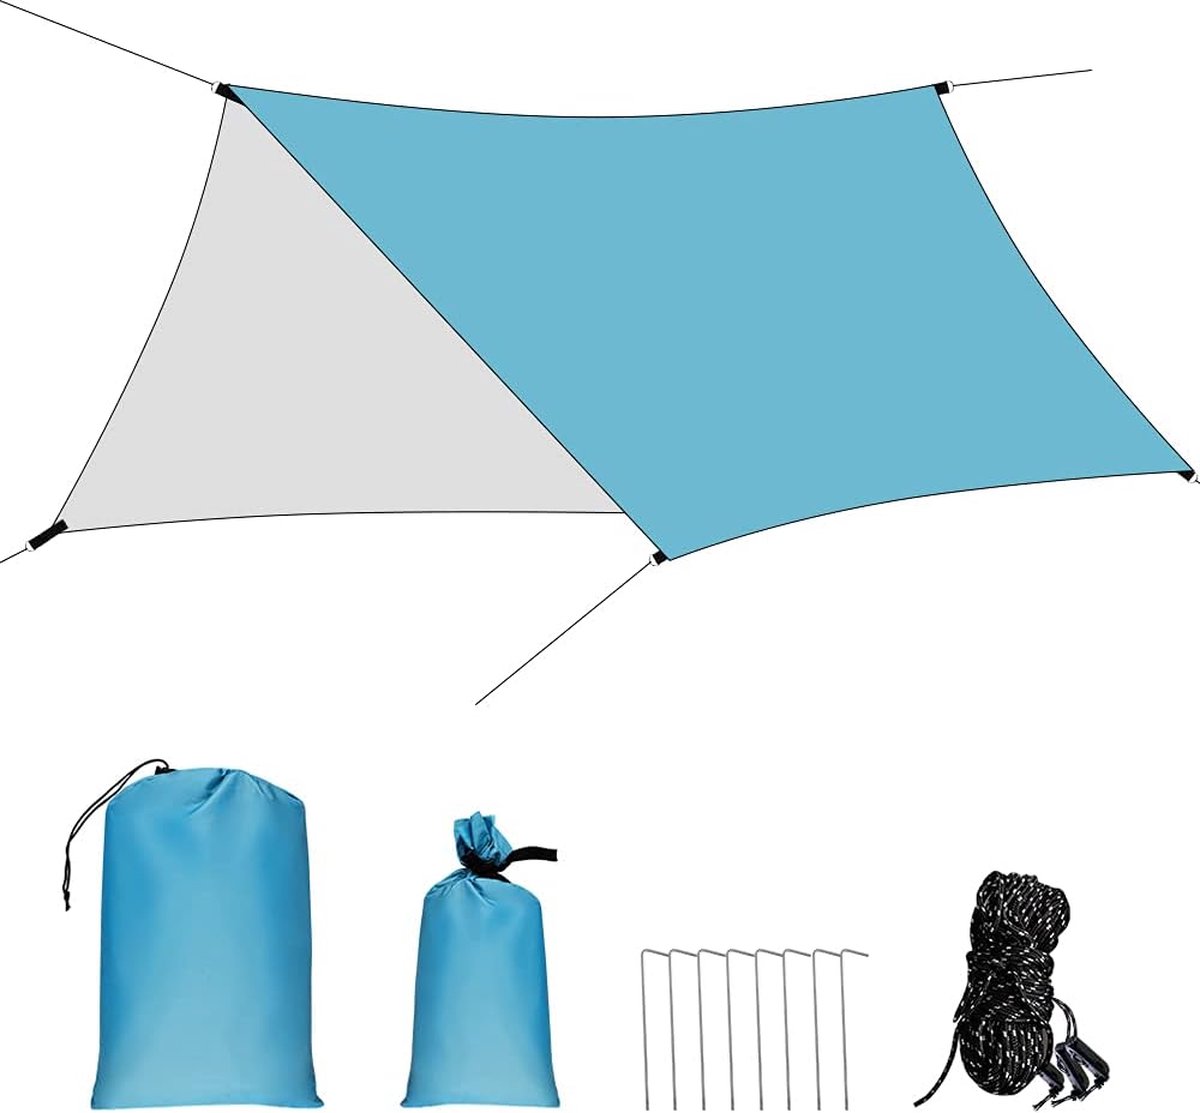 Camping tentzeil waterdicht, 3 m x 4,45 m tarp voor hangmat regenbescherming zonwering met aluminium pennen en nylon touwen voor kamperen, outdoor reizen